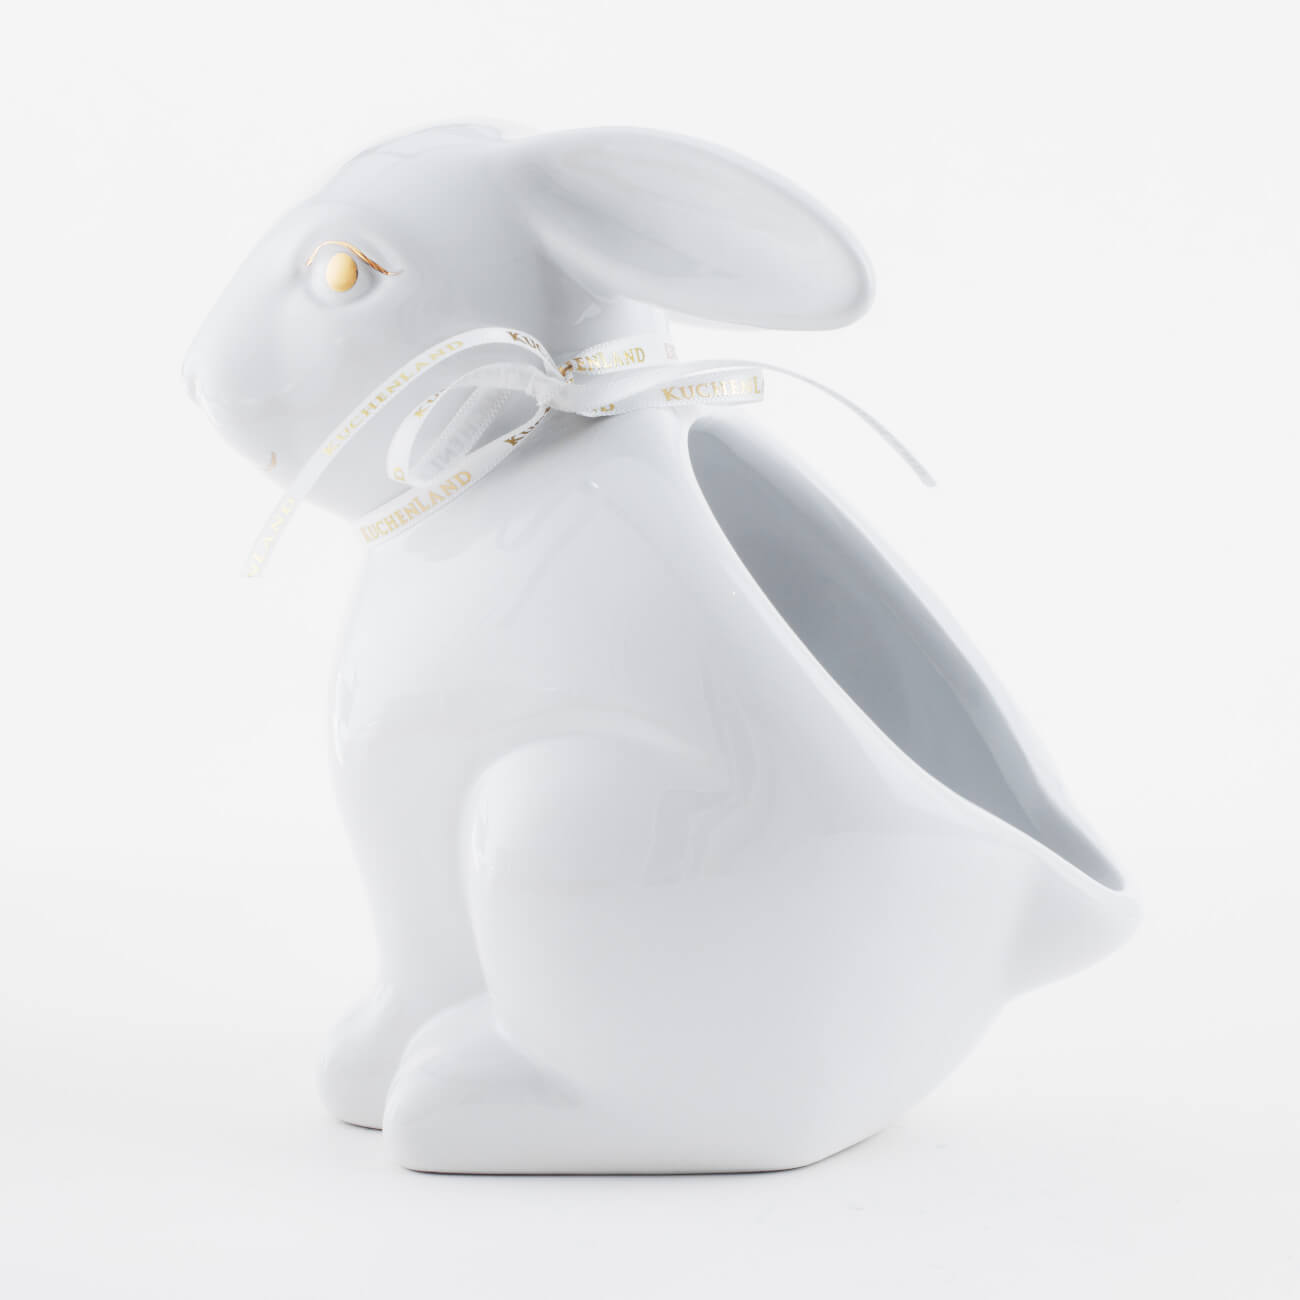 конфетница 12х14 см с ручкой керамика белая кролик на корзине easter gold Конфетница, 17х17 см, керамика, белая, Кролик, Easter gold